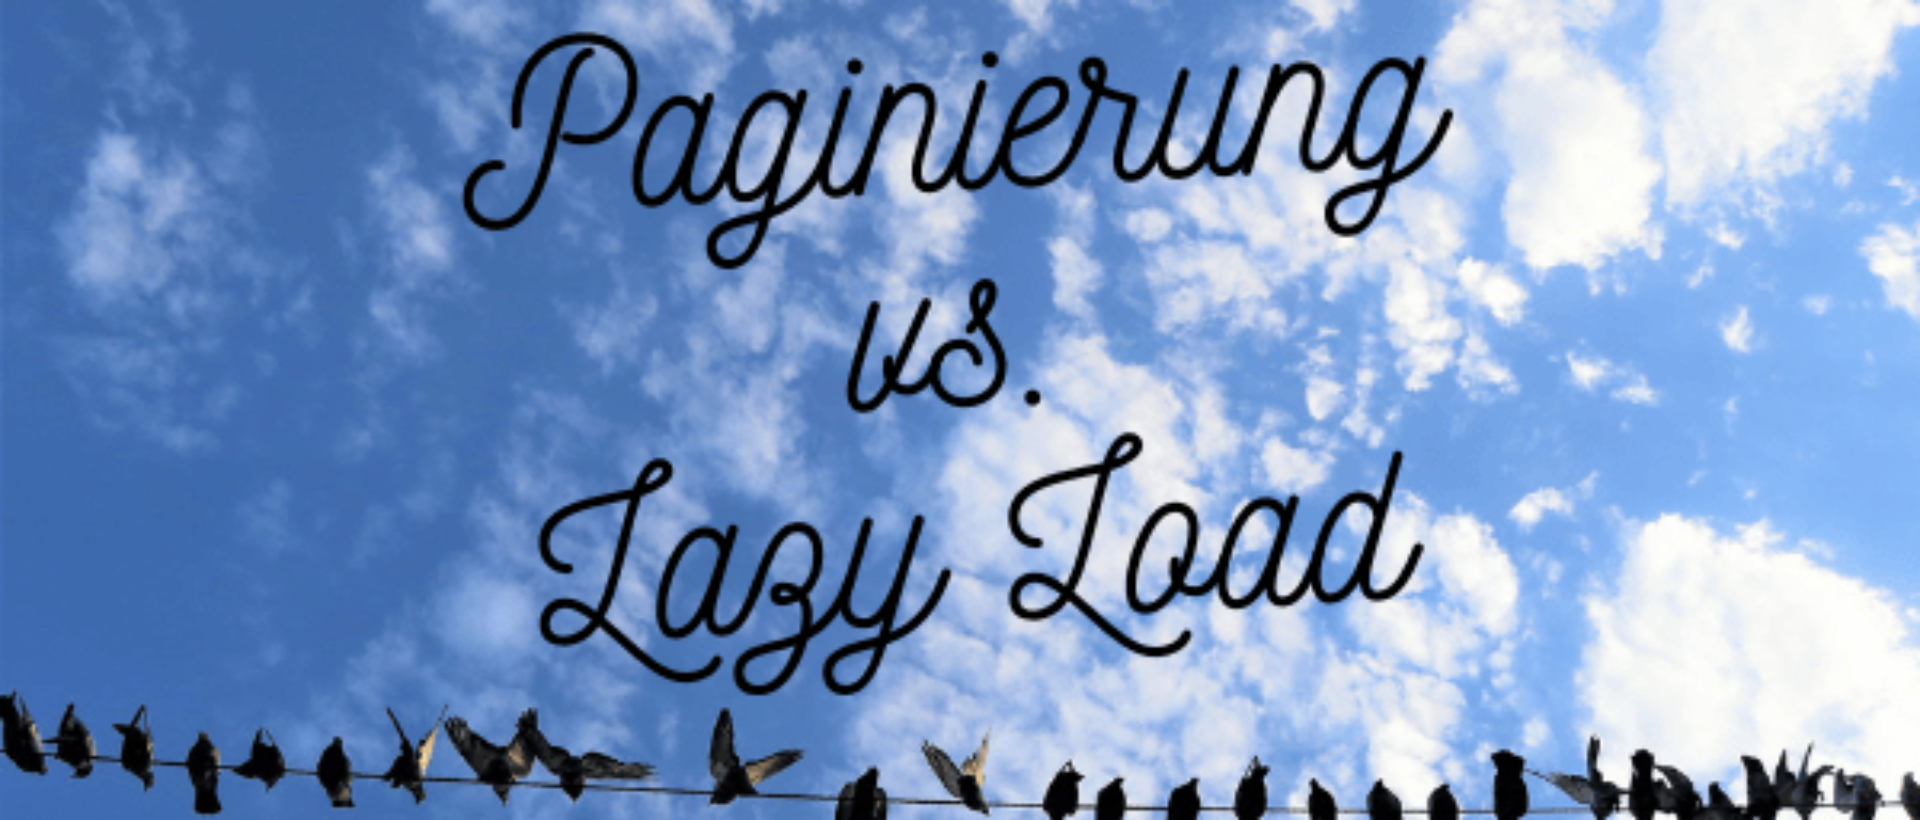 Lazy Loading versus Paginierung Bild mit Tauben auf einer Leitung sinnbildlich für die Auflistung einer Vielzahl von Linkseiten und Bequemlichkeit